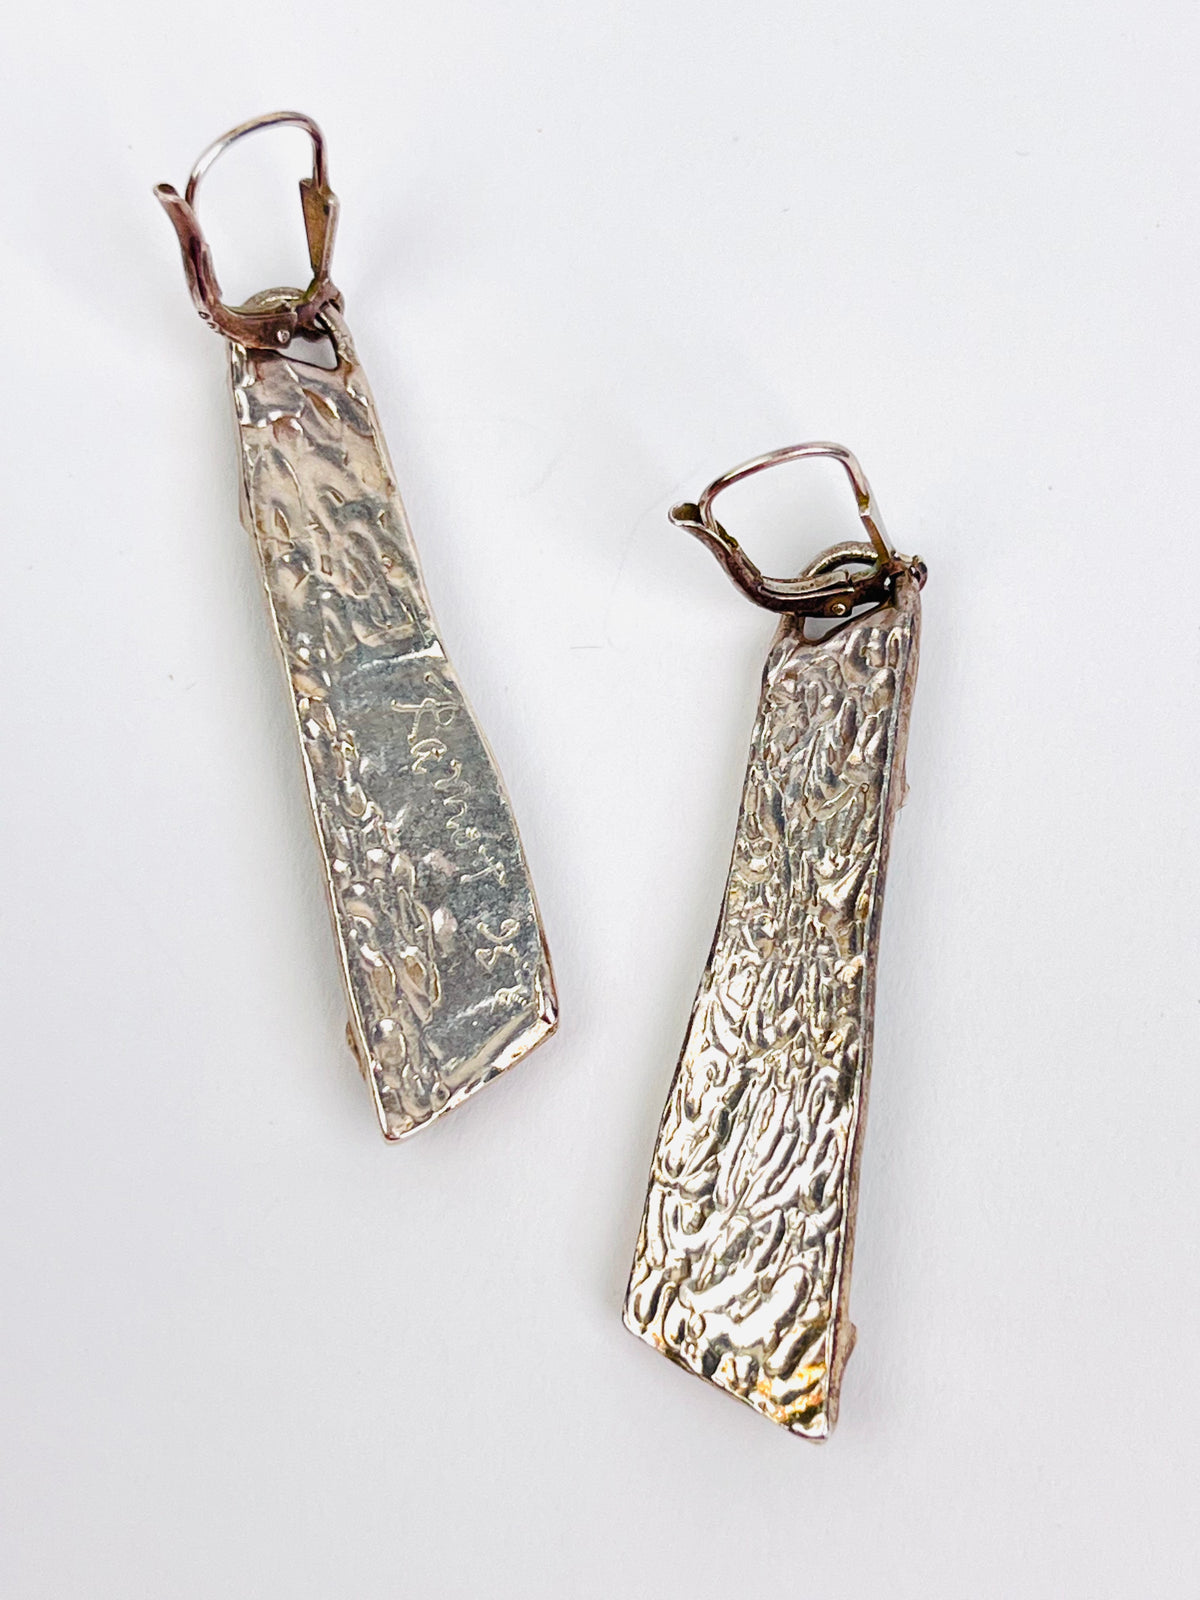 Sterling & Glass Earring by Uri Ramot